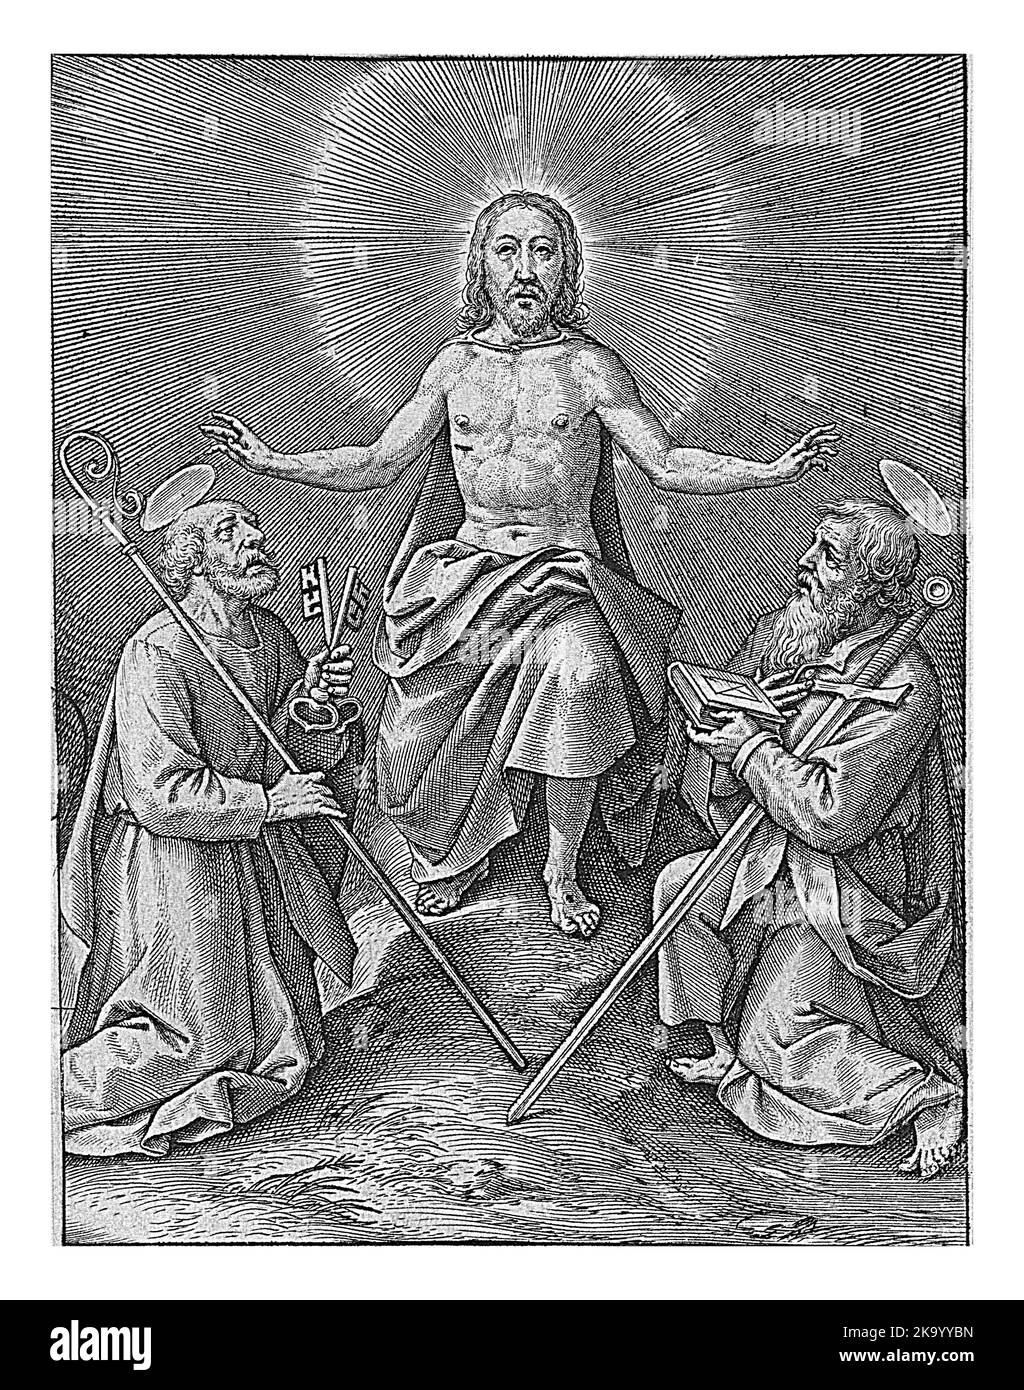 Cristo risorto con Pietro e Paolo, Hieronymus Wierix, 1563 - 1619. Pietro e Paolo si inginocchiano nell'adorazione davanti a Cristo risorto. Li benedice, si Foto Stock